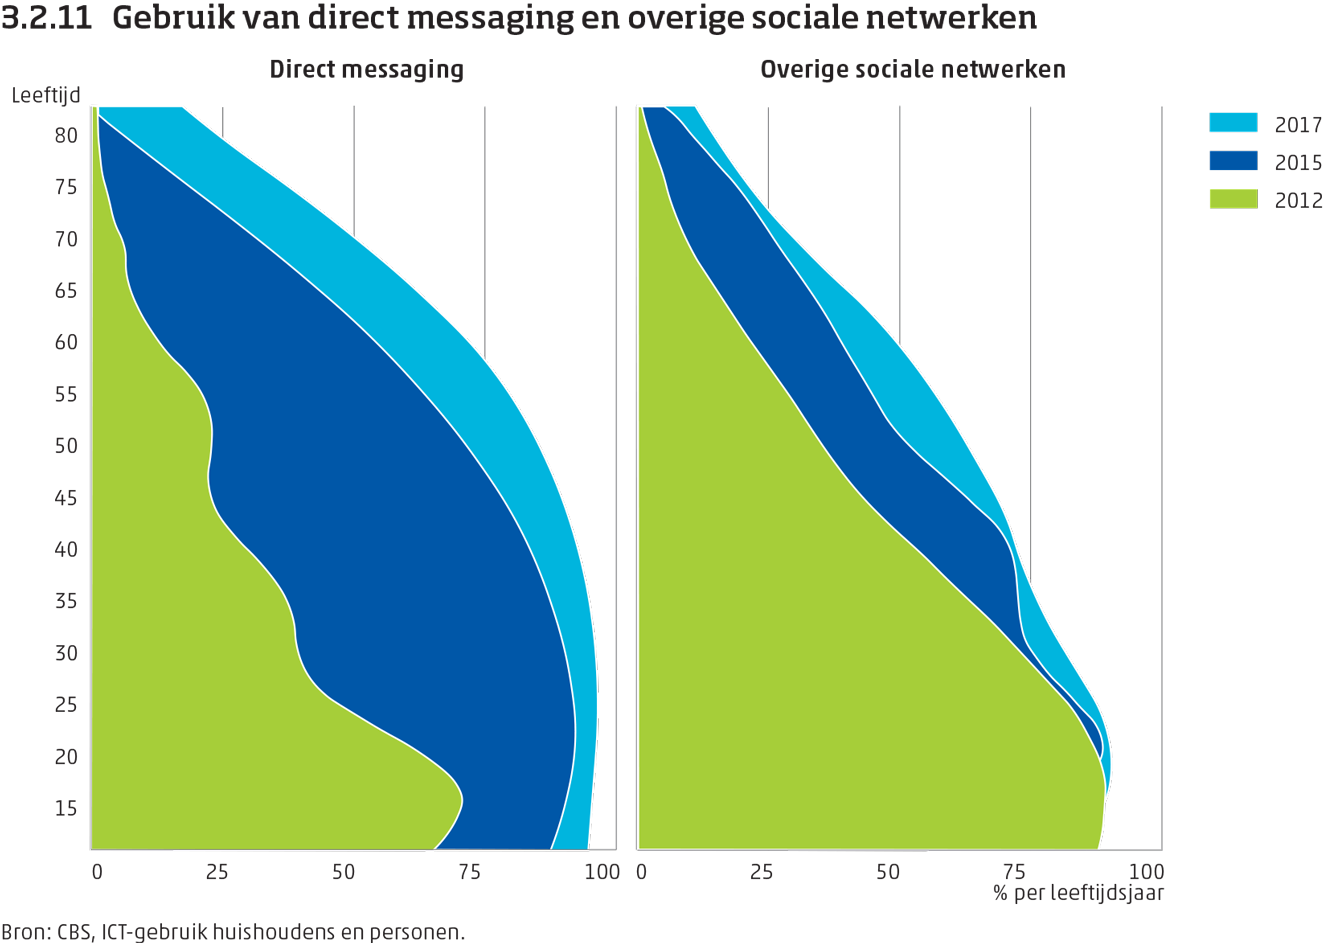 Het aandeel gebruikers van direct messaging en overig sociale netwerken per leeftijdsgroep, in 2012, 2015 en 2017.